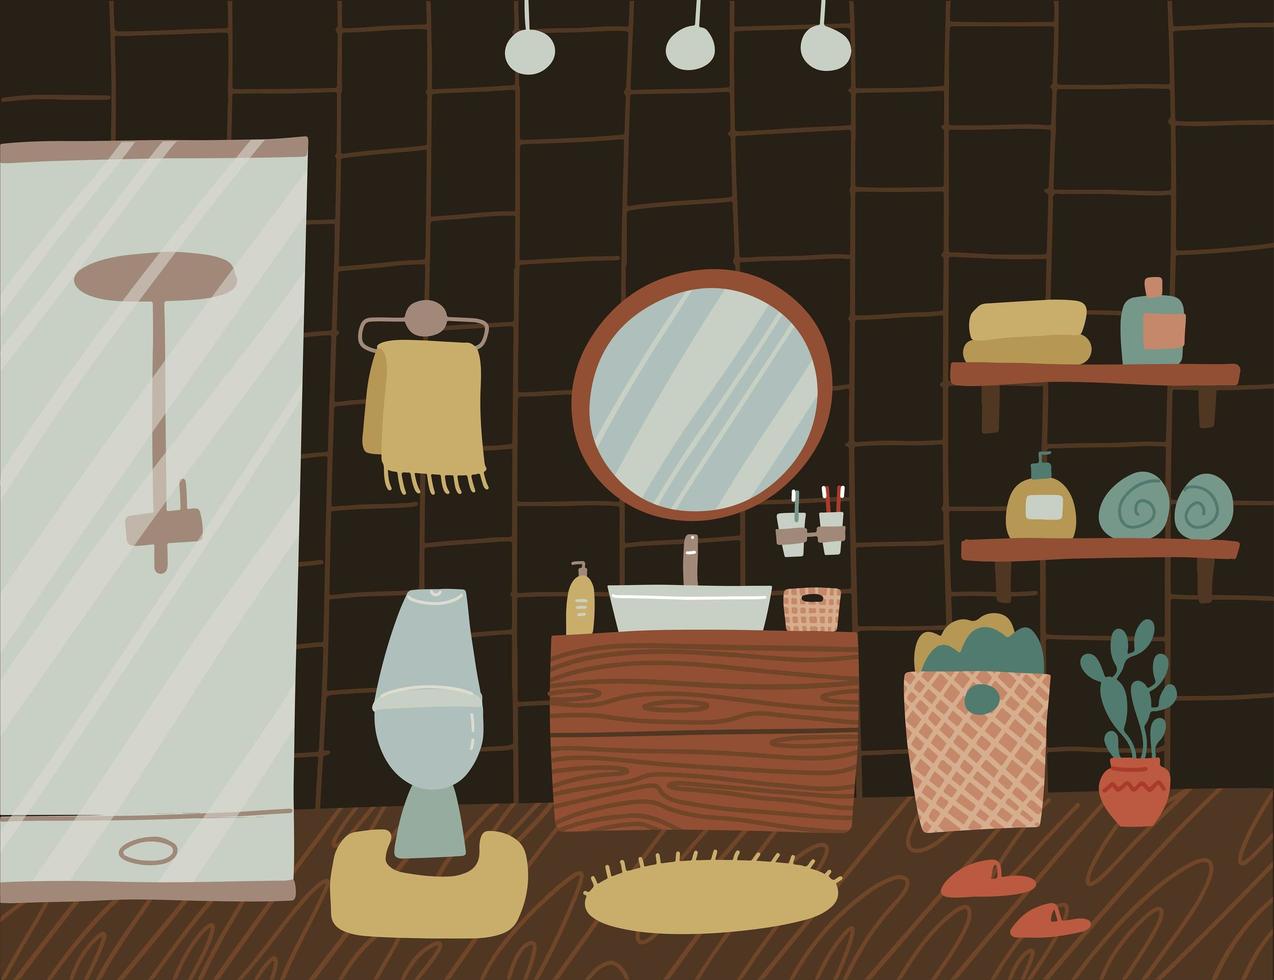 elegante interior de baño escandinavo de madera oscura: grifo, ducha, inodoro, lavabo, decoración del hogar. acogedor, moderno y cómodo apartamento amueblado en estilo hygge. ilustración plana vectorial vector